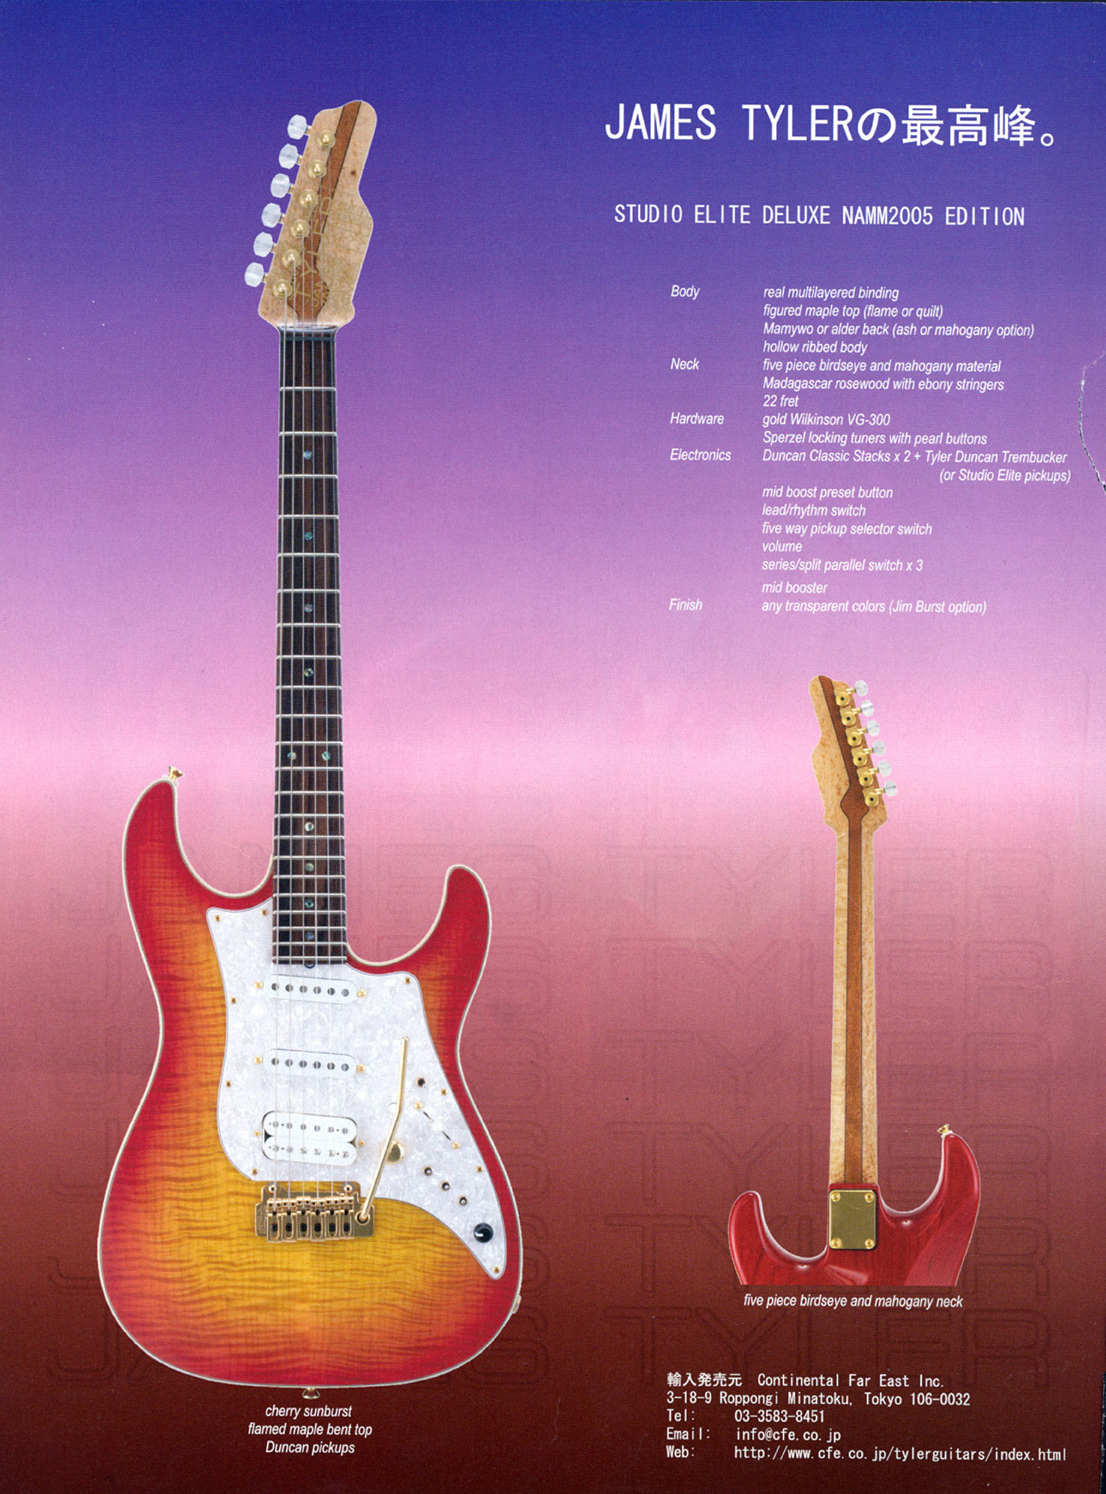 Copy of 2005 Guitar Magazine